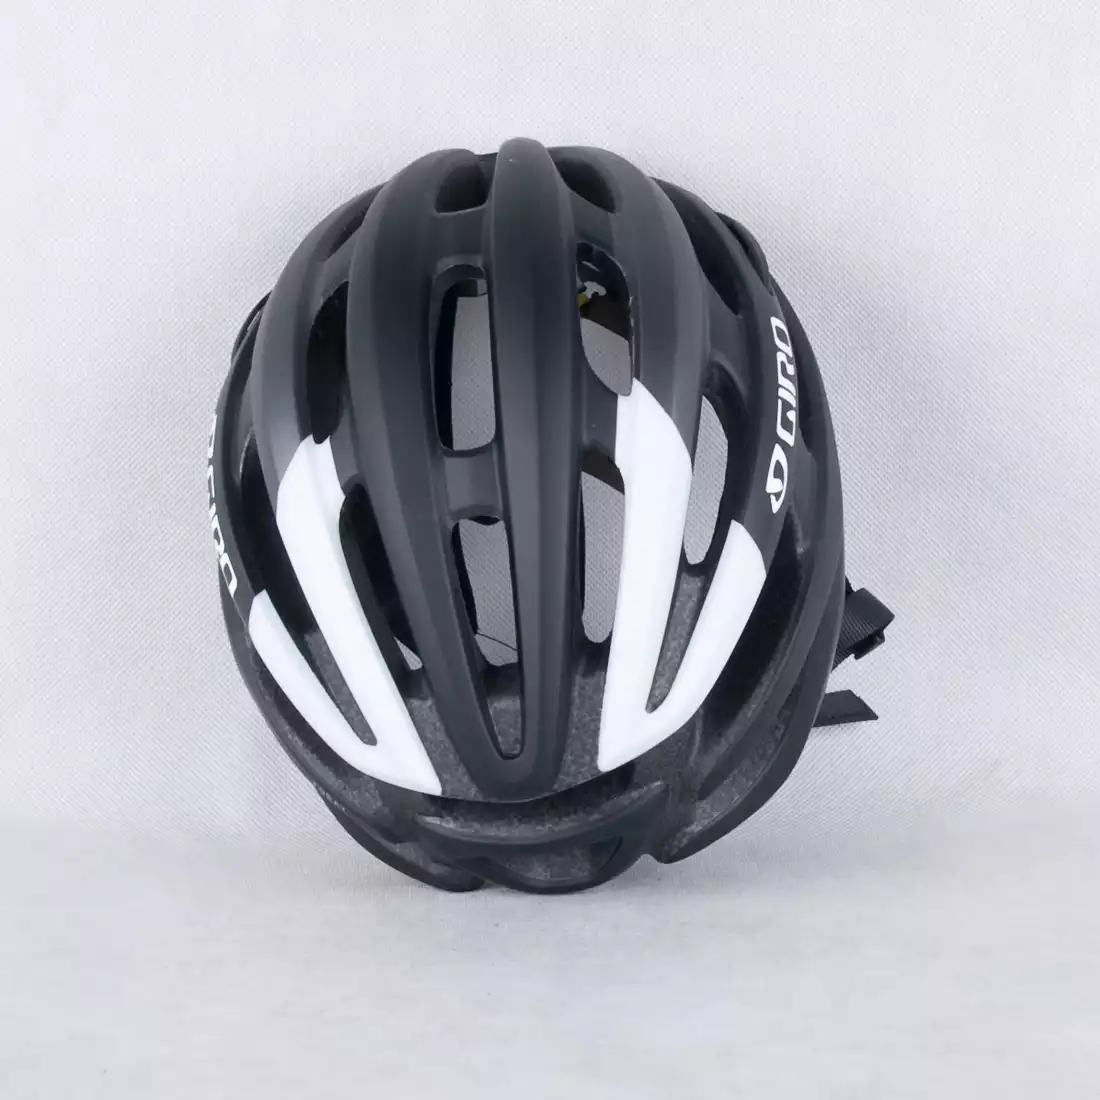 GIRO FORAY MIPS - kask rowerowy czarno-biały mat